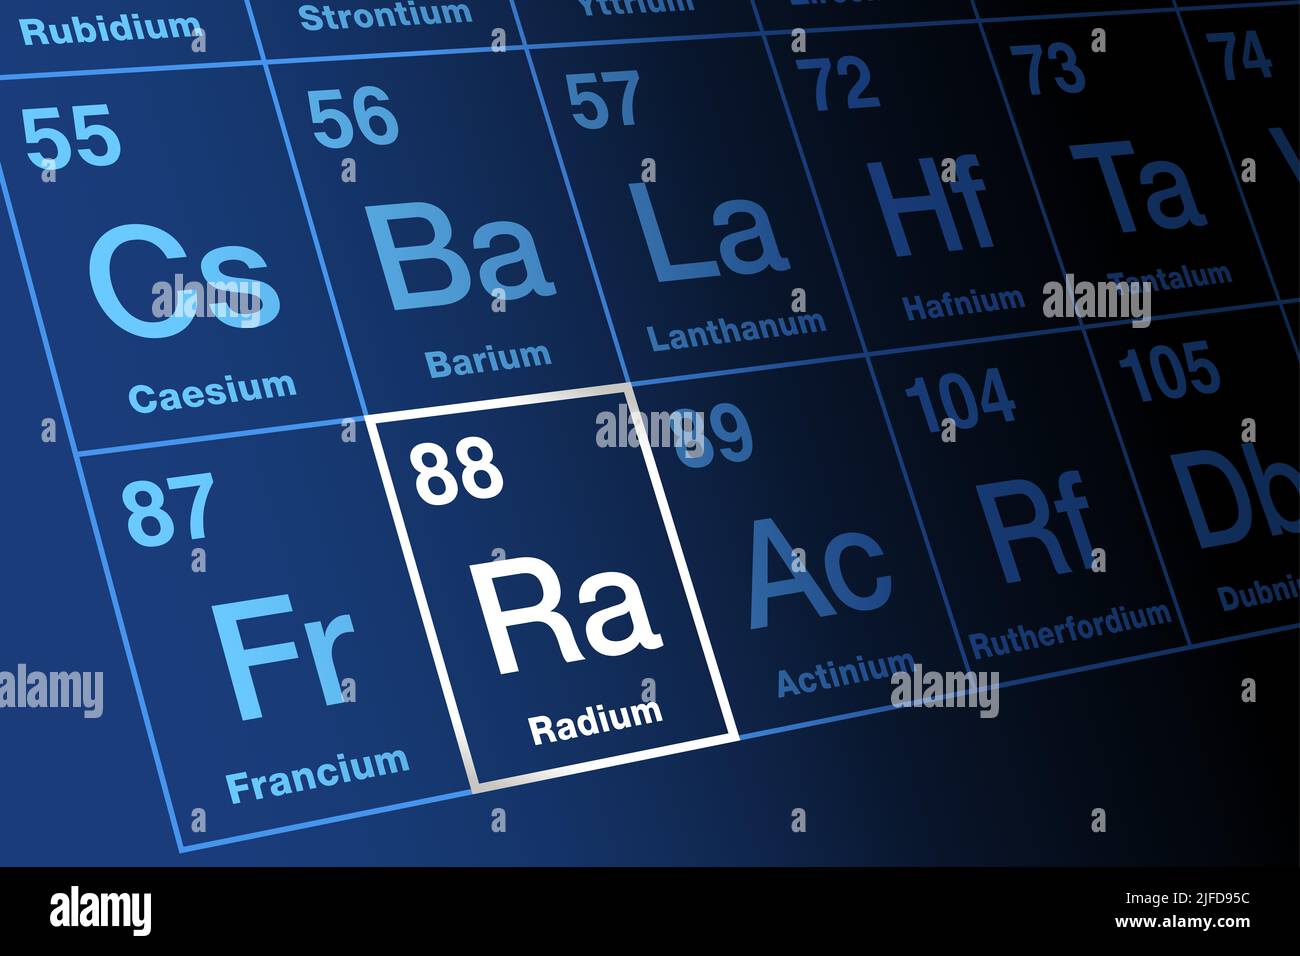 Radium, sur la table périodique des éléments. Métal alcalin radioactif de terre, avec le symbole Ra et le numéro atomique 88. Se décompose en radon. Banque D'Images